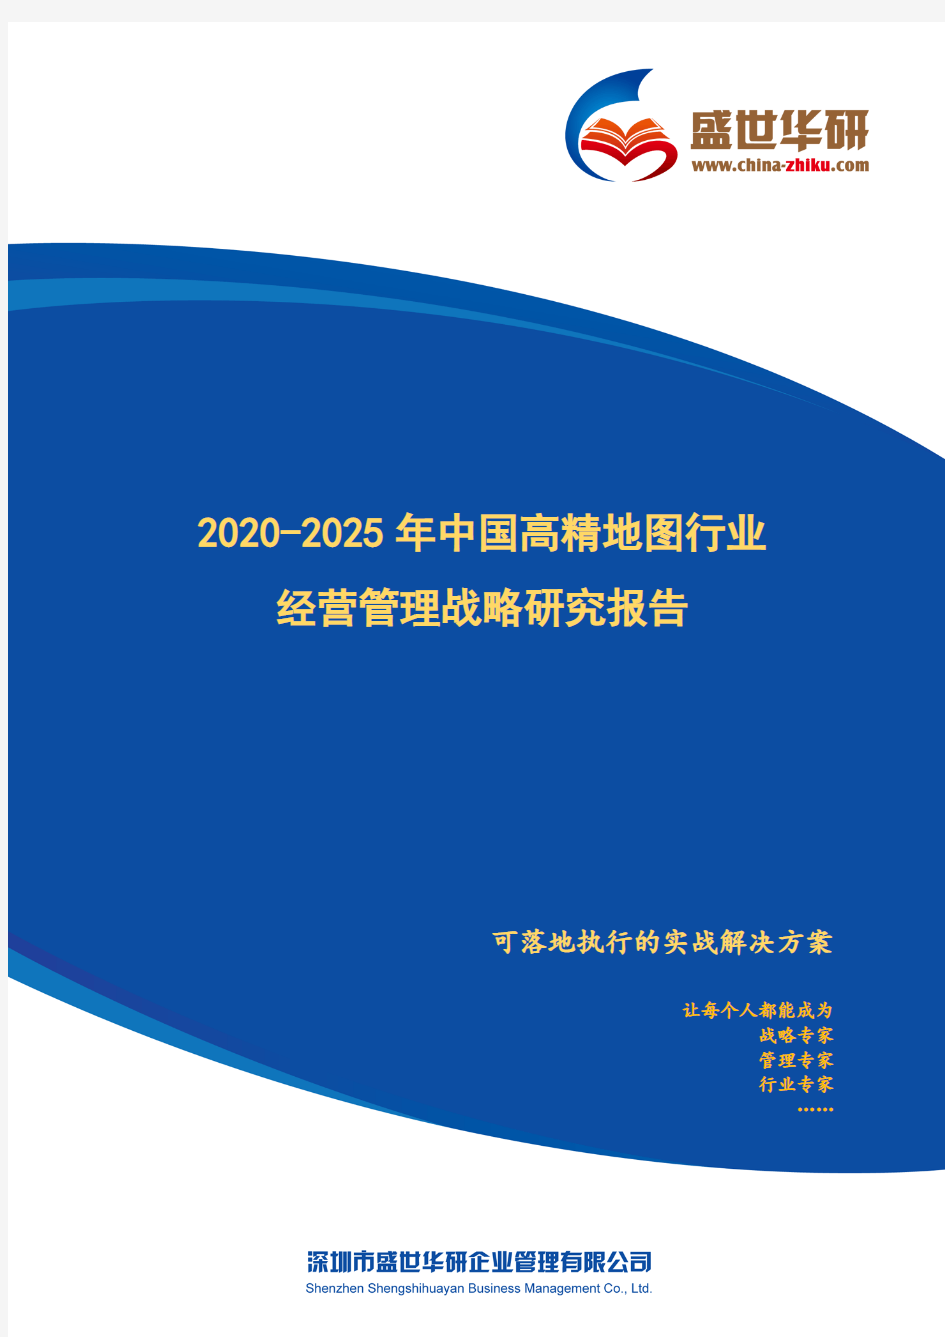 【完整版】2020-2025年中国高精地图行业经营管理战略研究报告